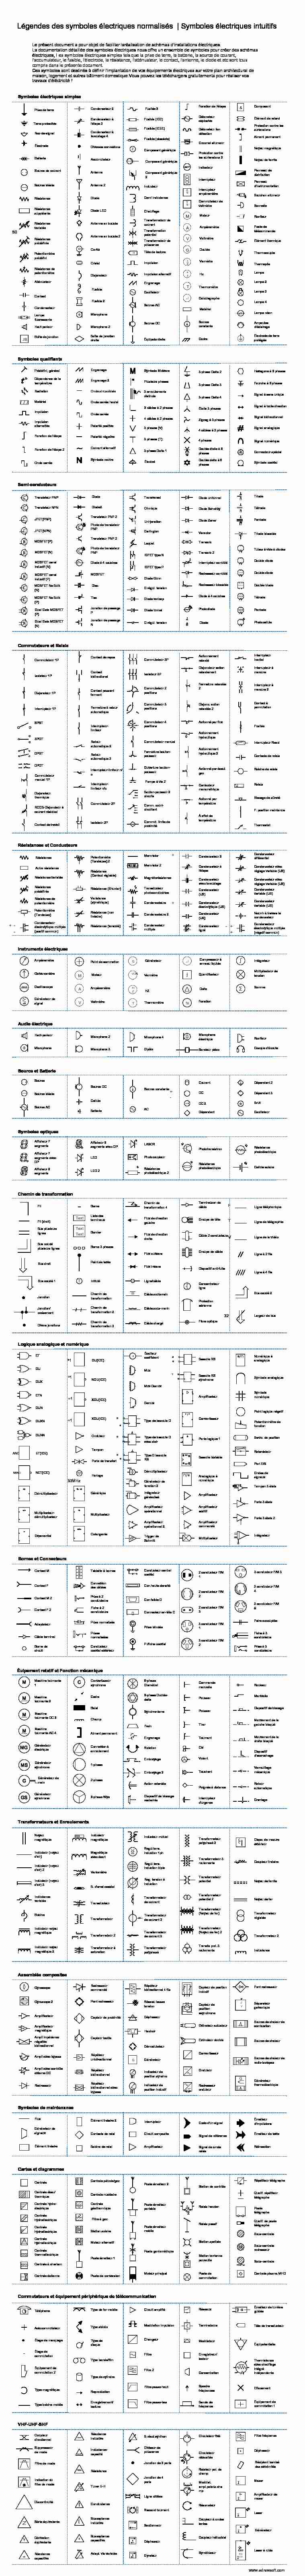 Légendes des symboles électriques normalisés  Symboles